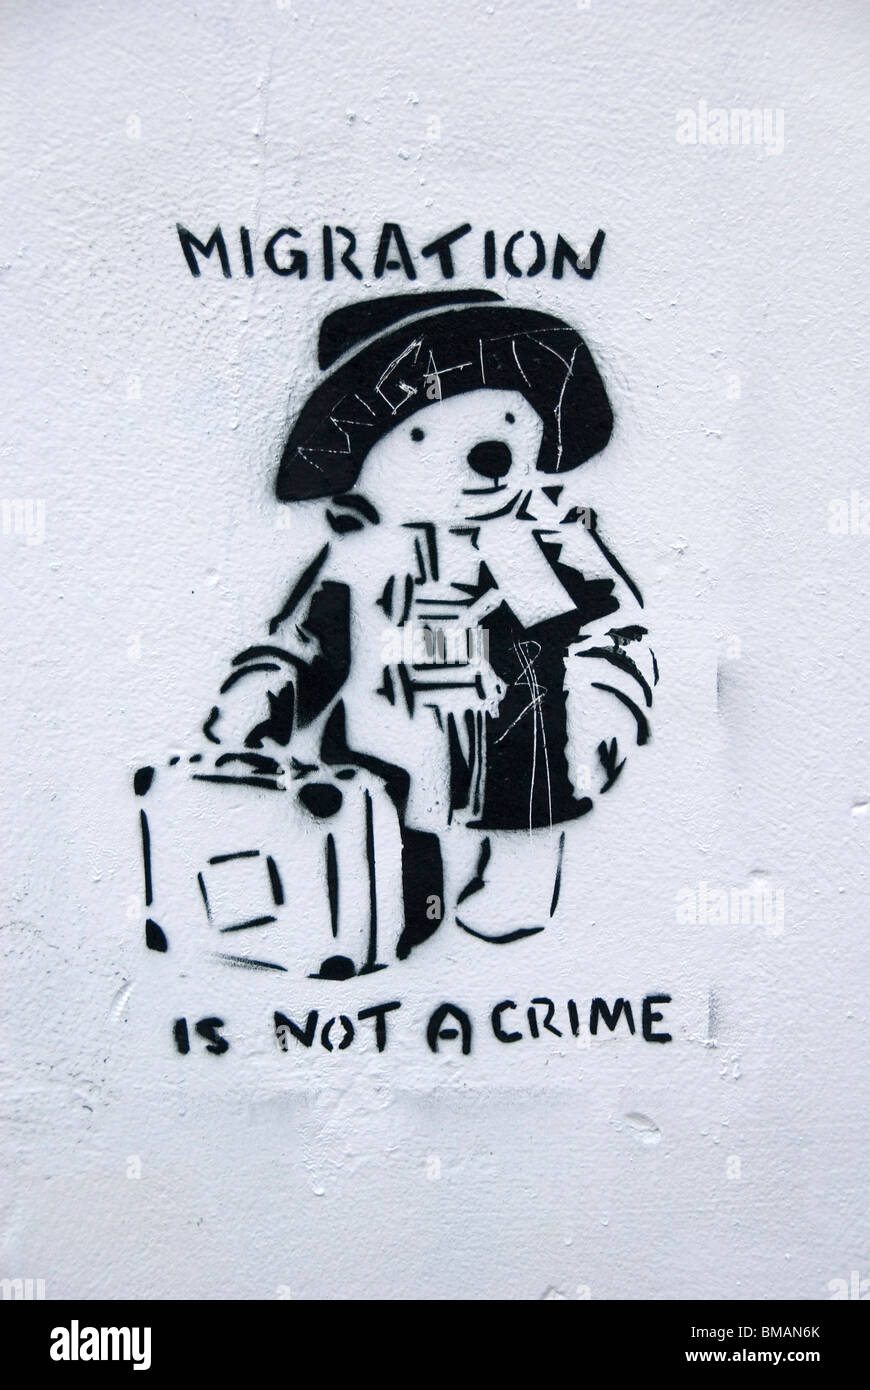 L'ours Paddington, graffiti, slogan, La migration n'est pas un crime, Bristol, Angleterre, Grande-Bretagne, Europe Banque D'Images